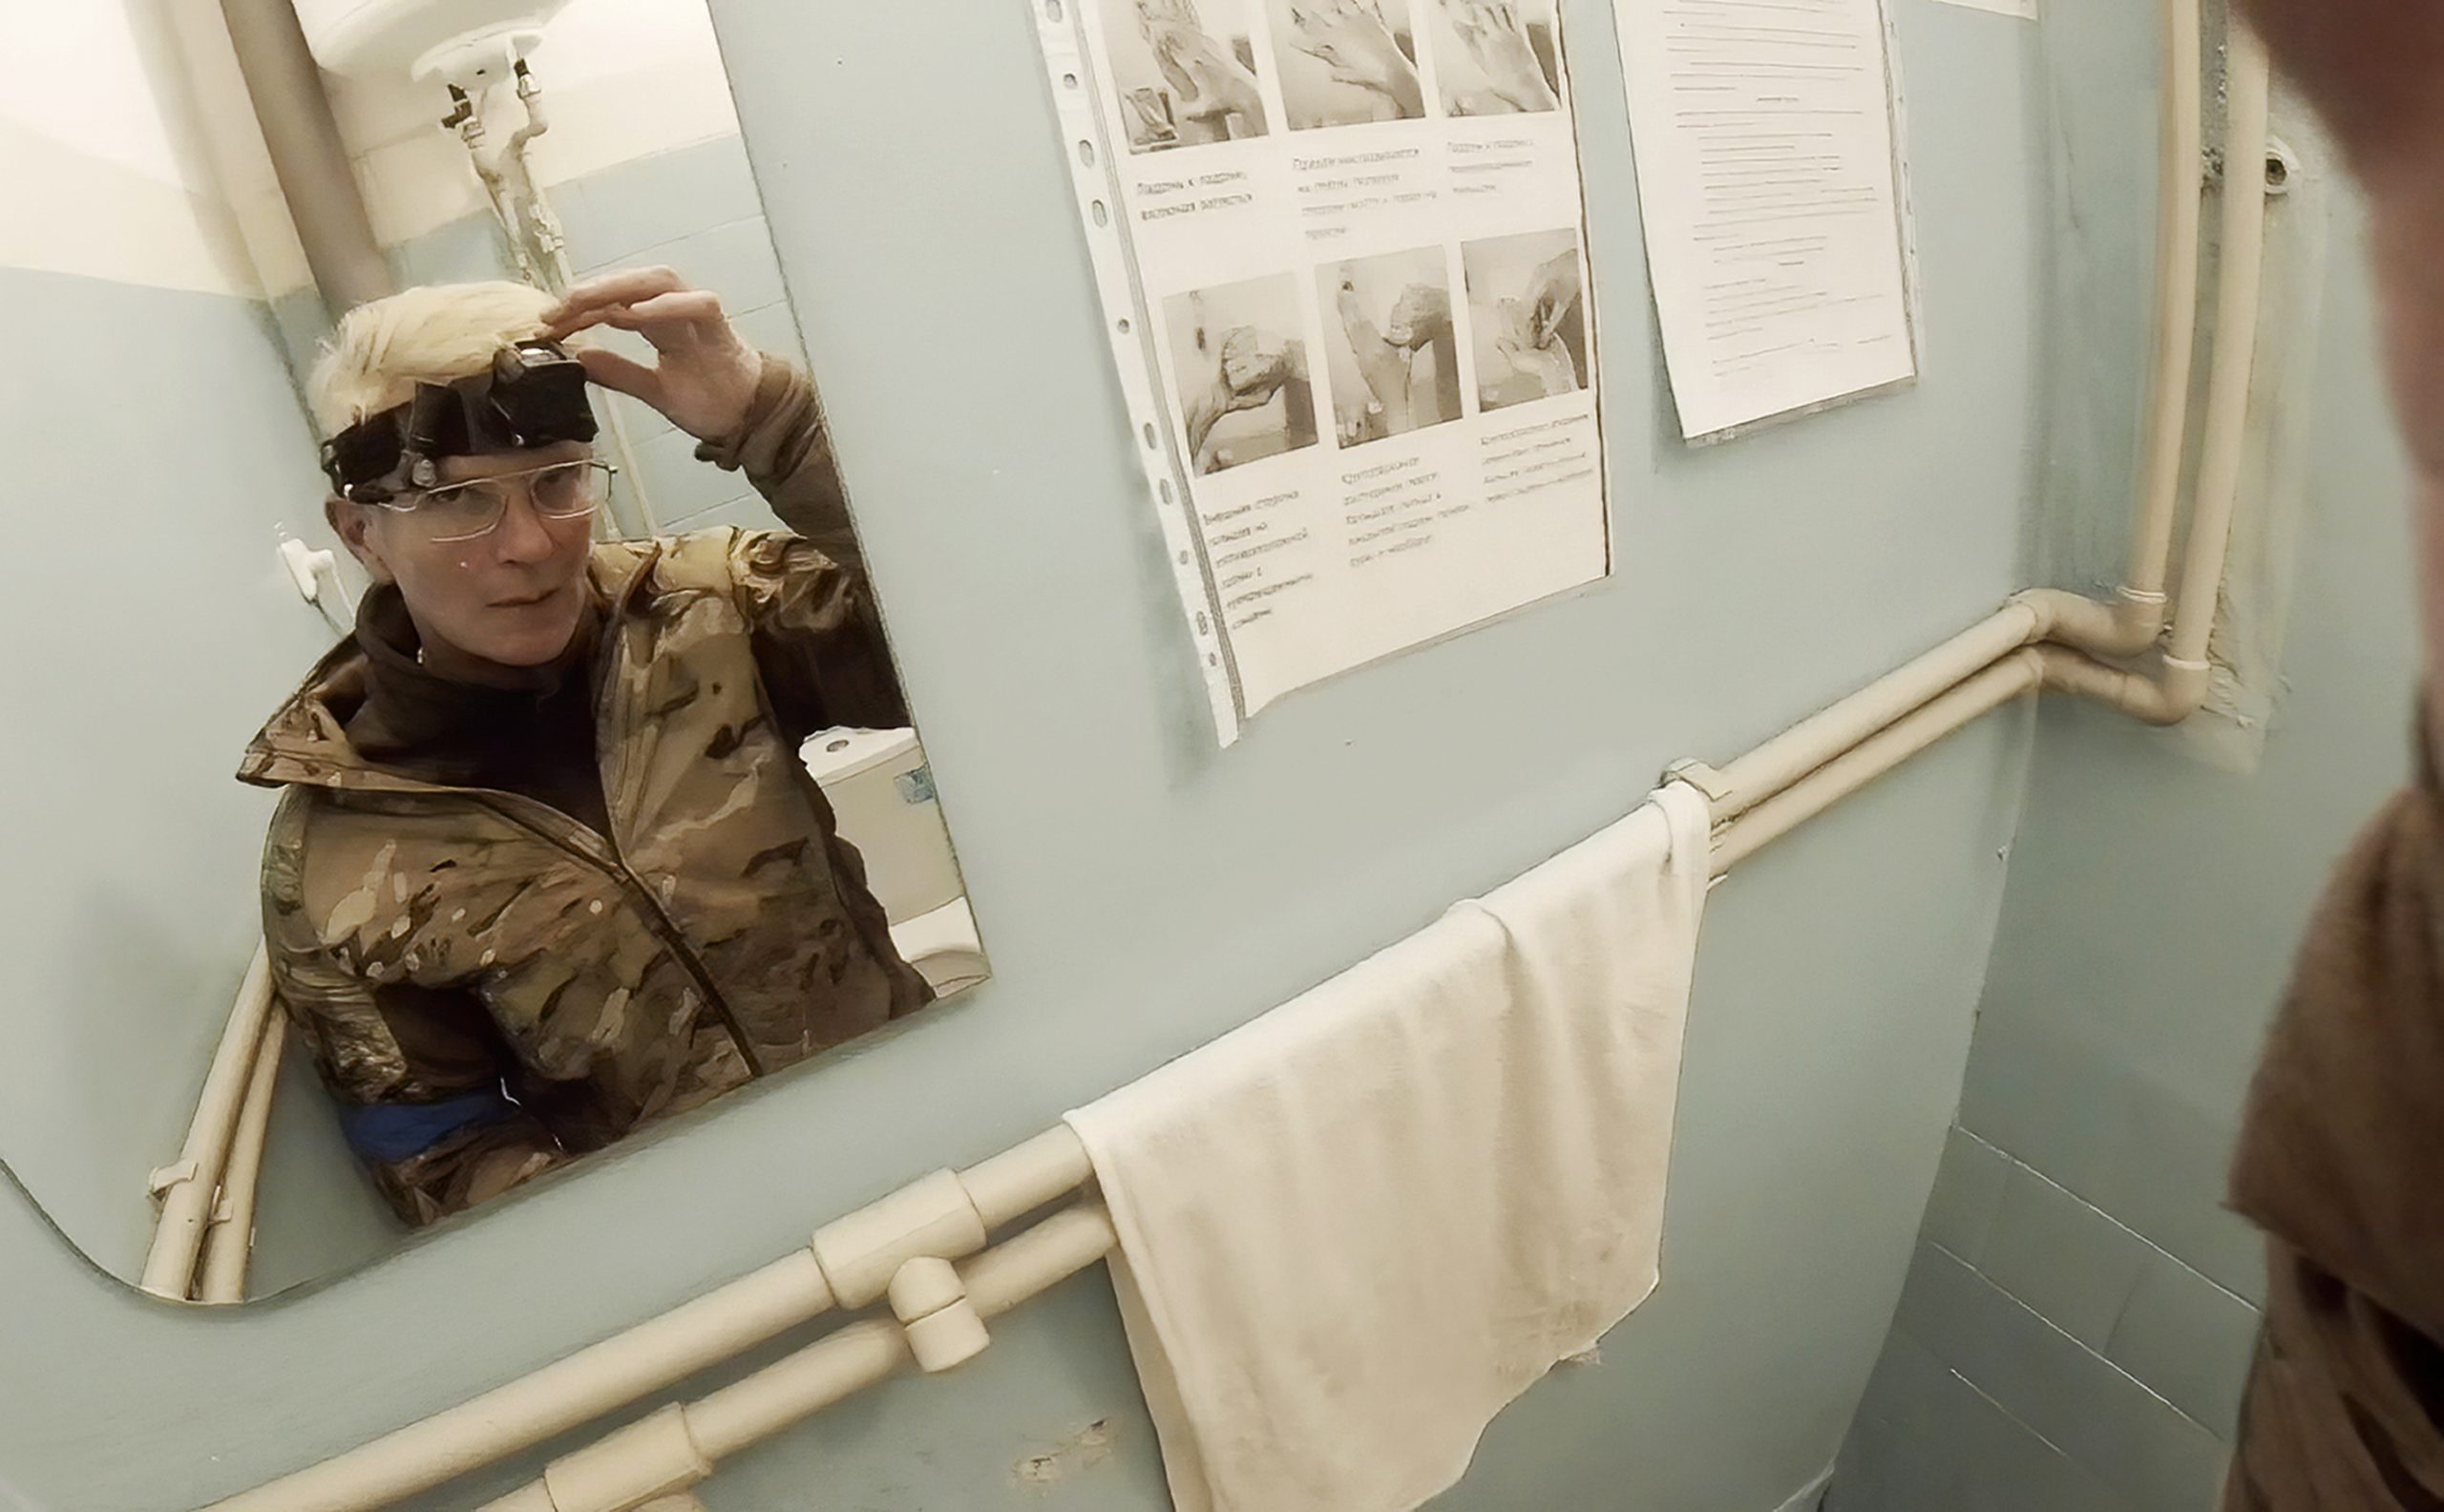 乌克兰军医拍下马里乌波尔惨况后遭俄军俘虏 抢救患者不分敌我画面曝光